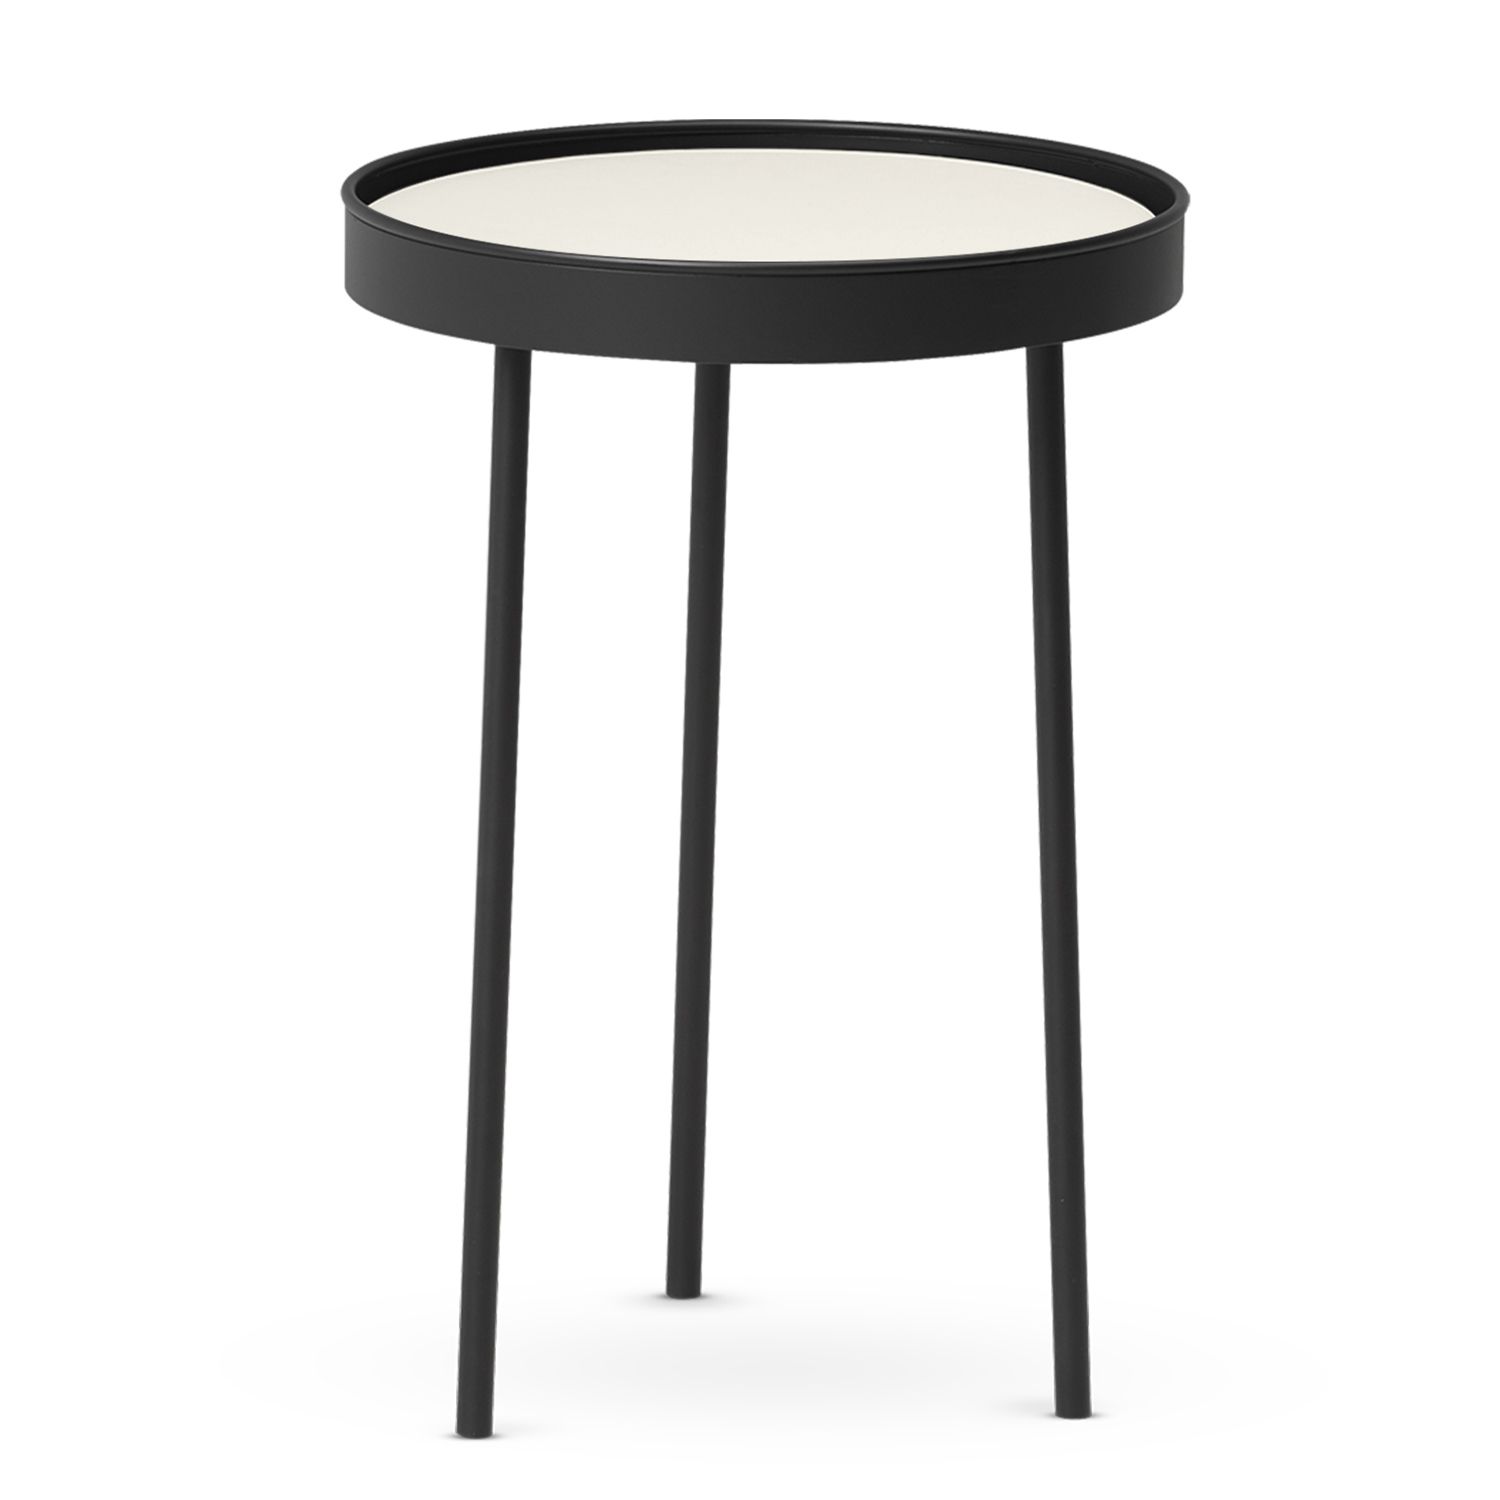 Northern designové odkládací stolky Stilk (průměr 35 cm) - DESIGNPROPAGANDA